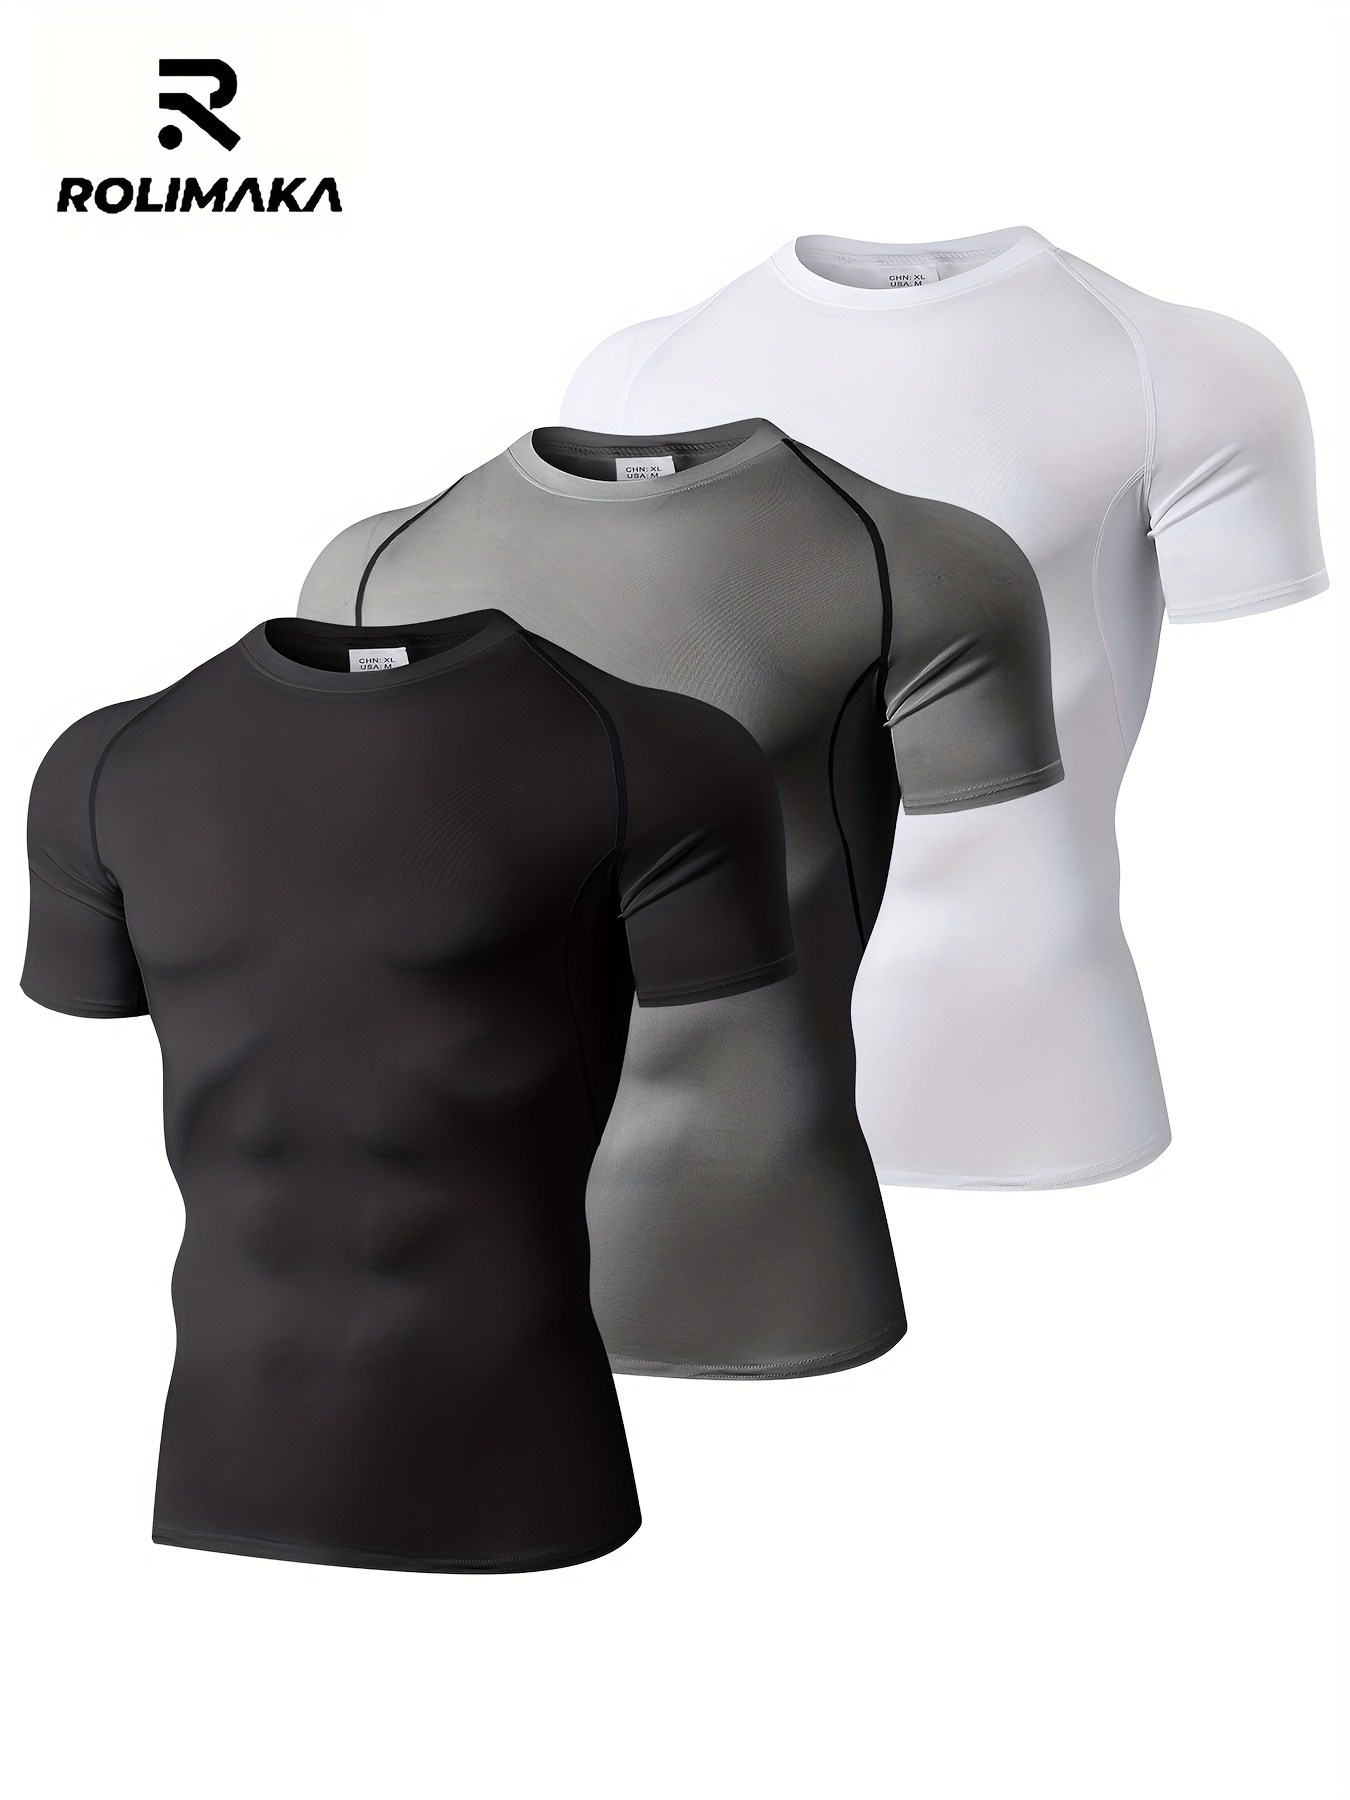 Camiseta gym rat, impressão nas costas - AtleticXpress